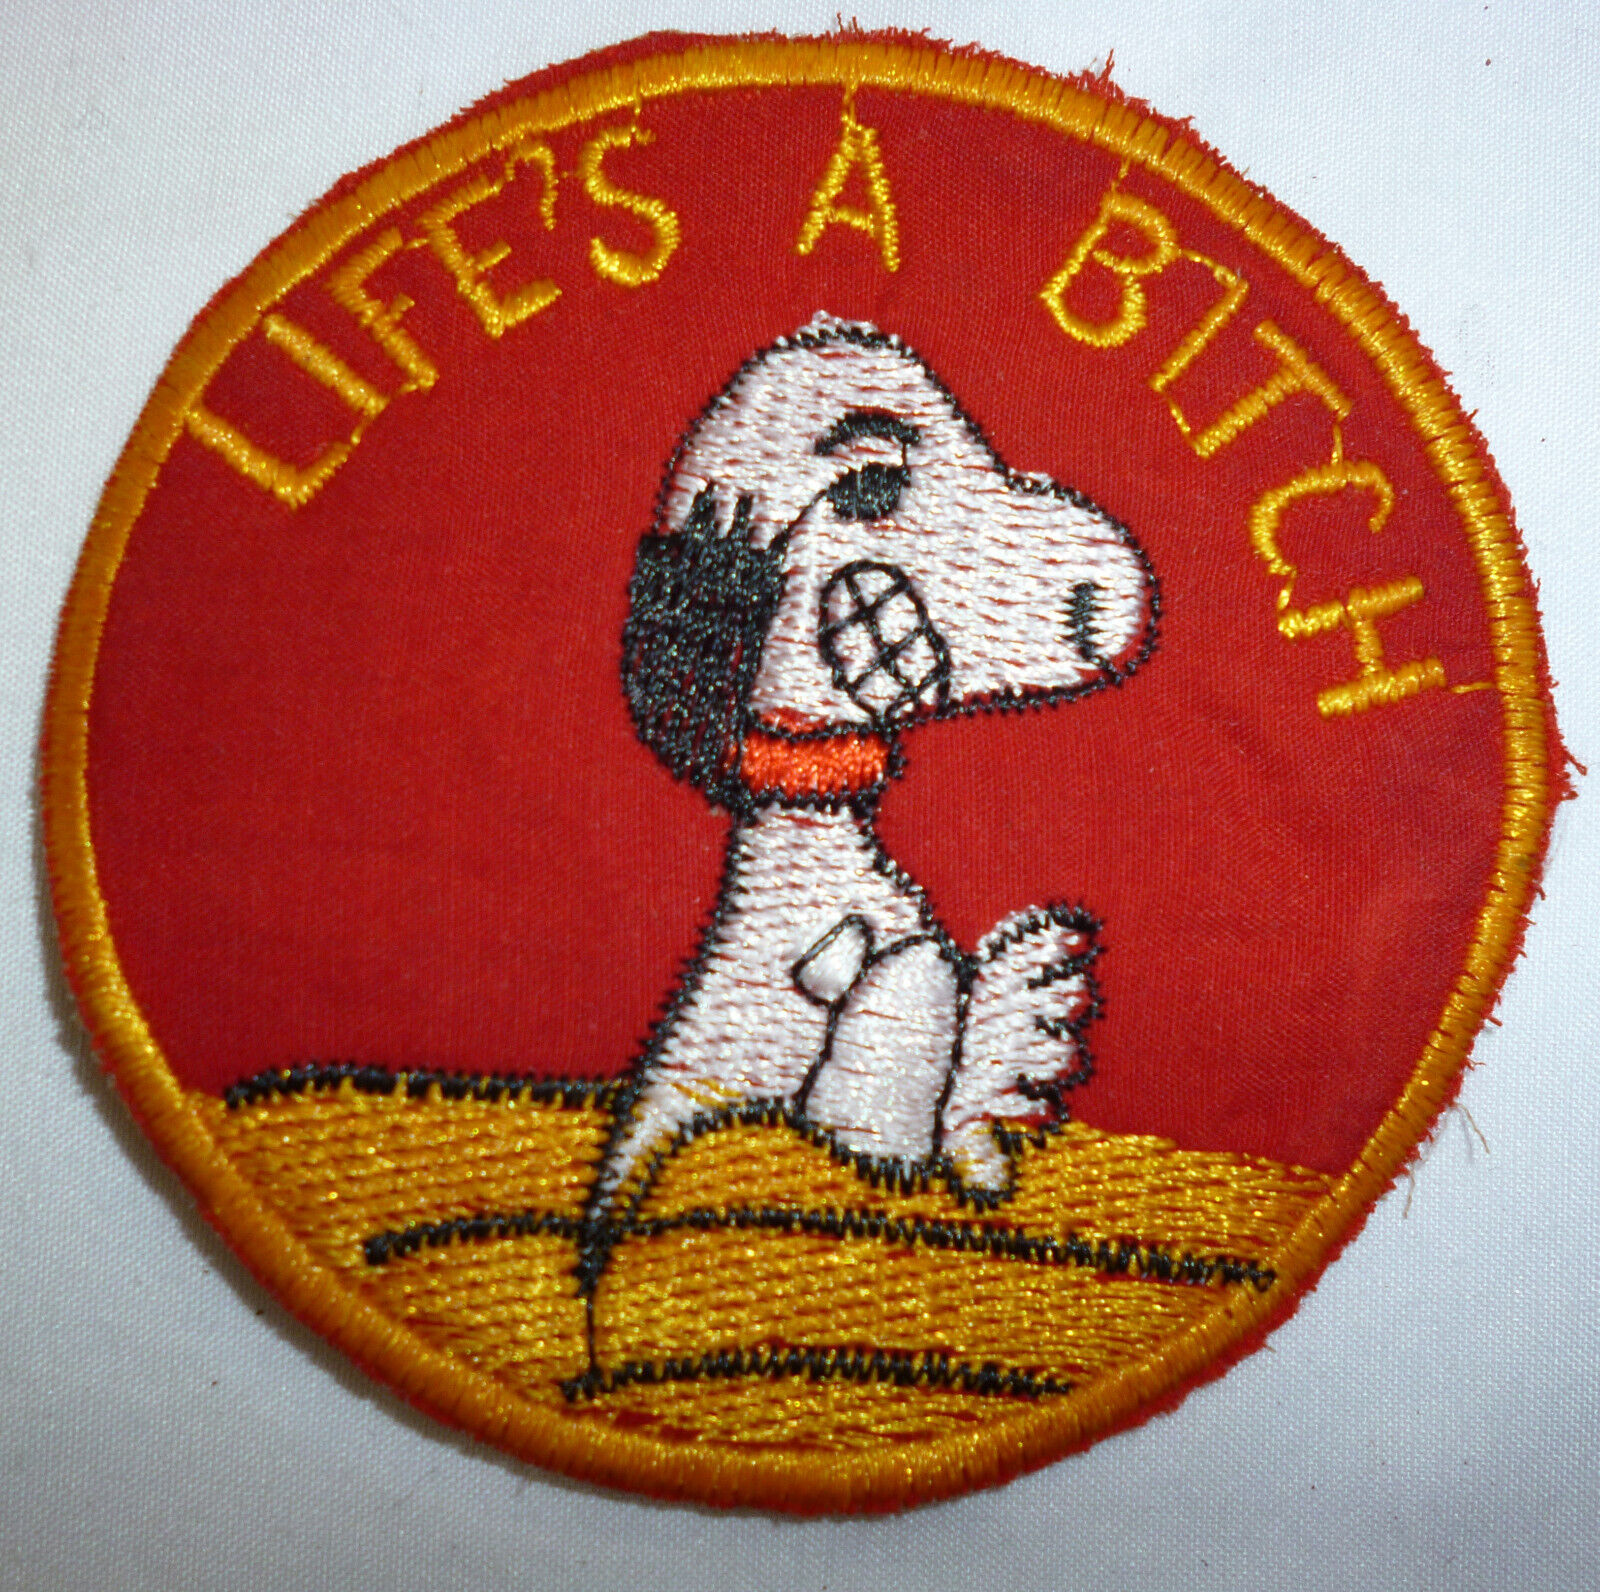 LIFE'S A BITCH - SNOOPY PATCH - RnR JAPAN - USAF - OKINAWA - Vietnam War - M.808